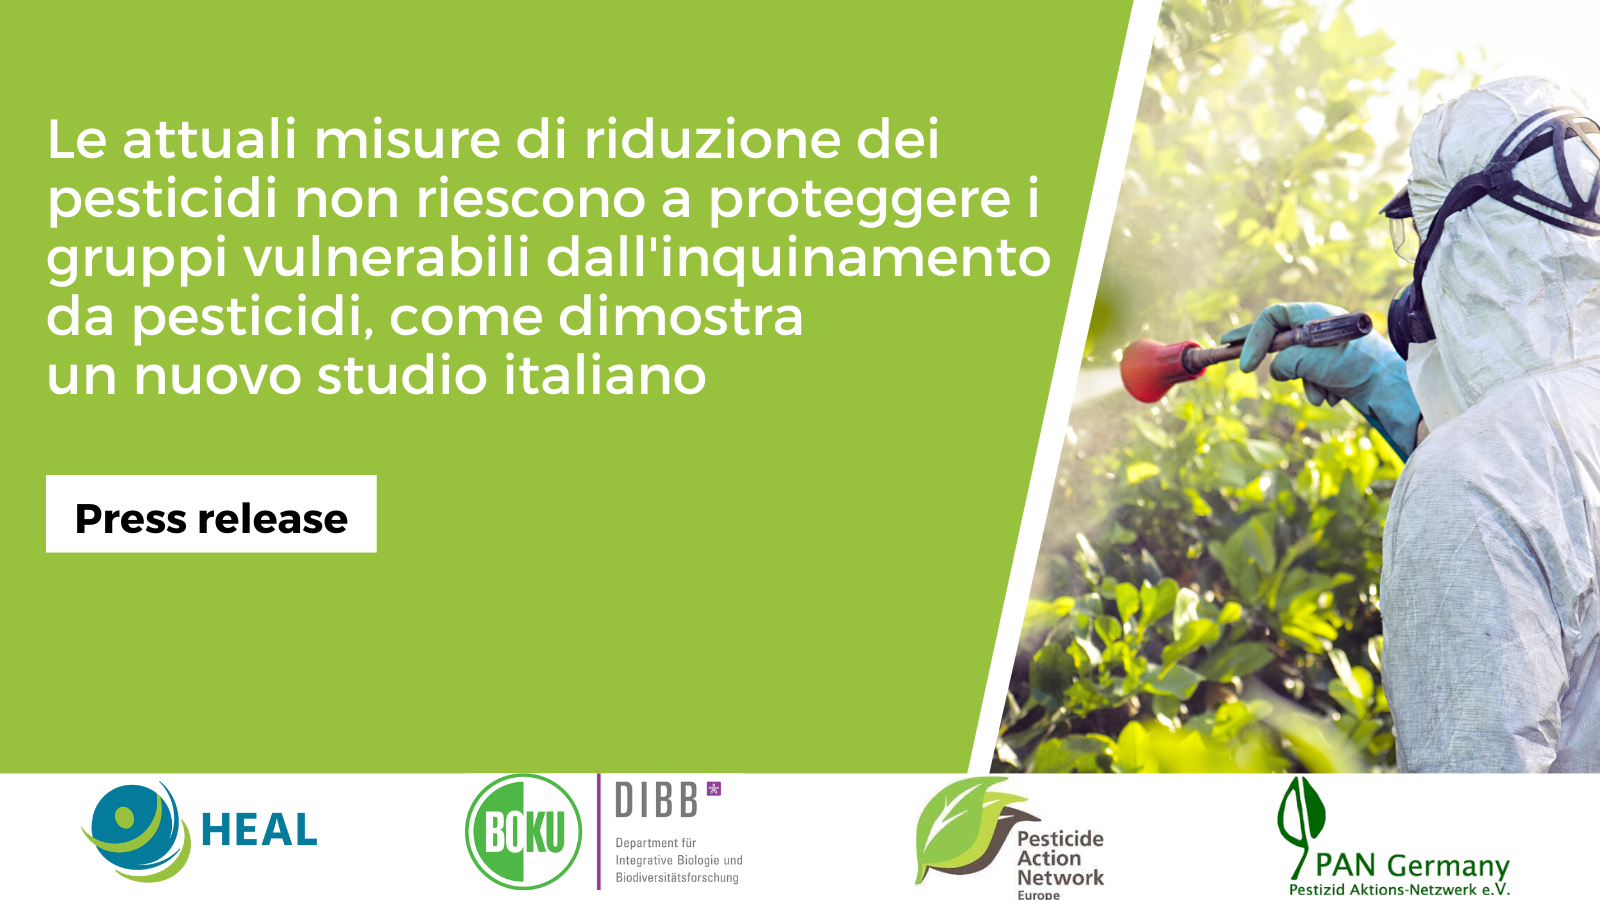 Le attuali misure di riduzione dei pesticidi non riescono a proteggere i gruppi vulnerabili dall’inquinamento da pesticidi, come dimostra un nuovo studio italiano su Bolzano e Alto Adige